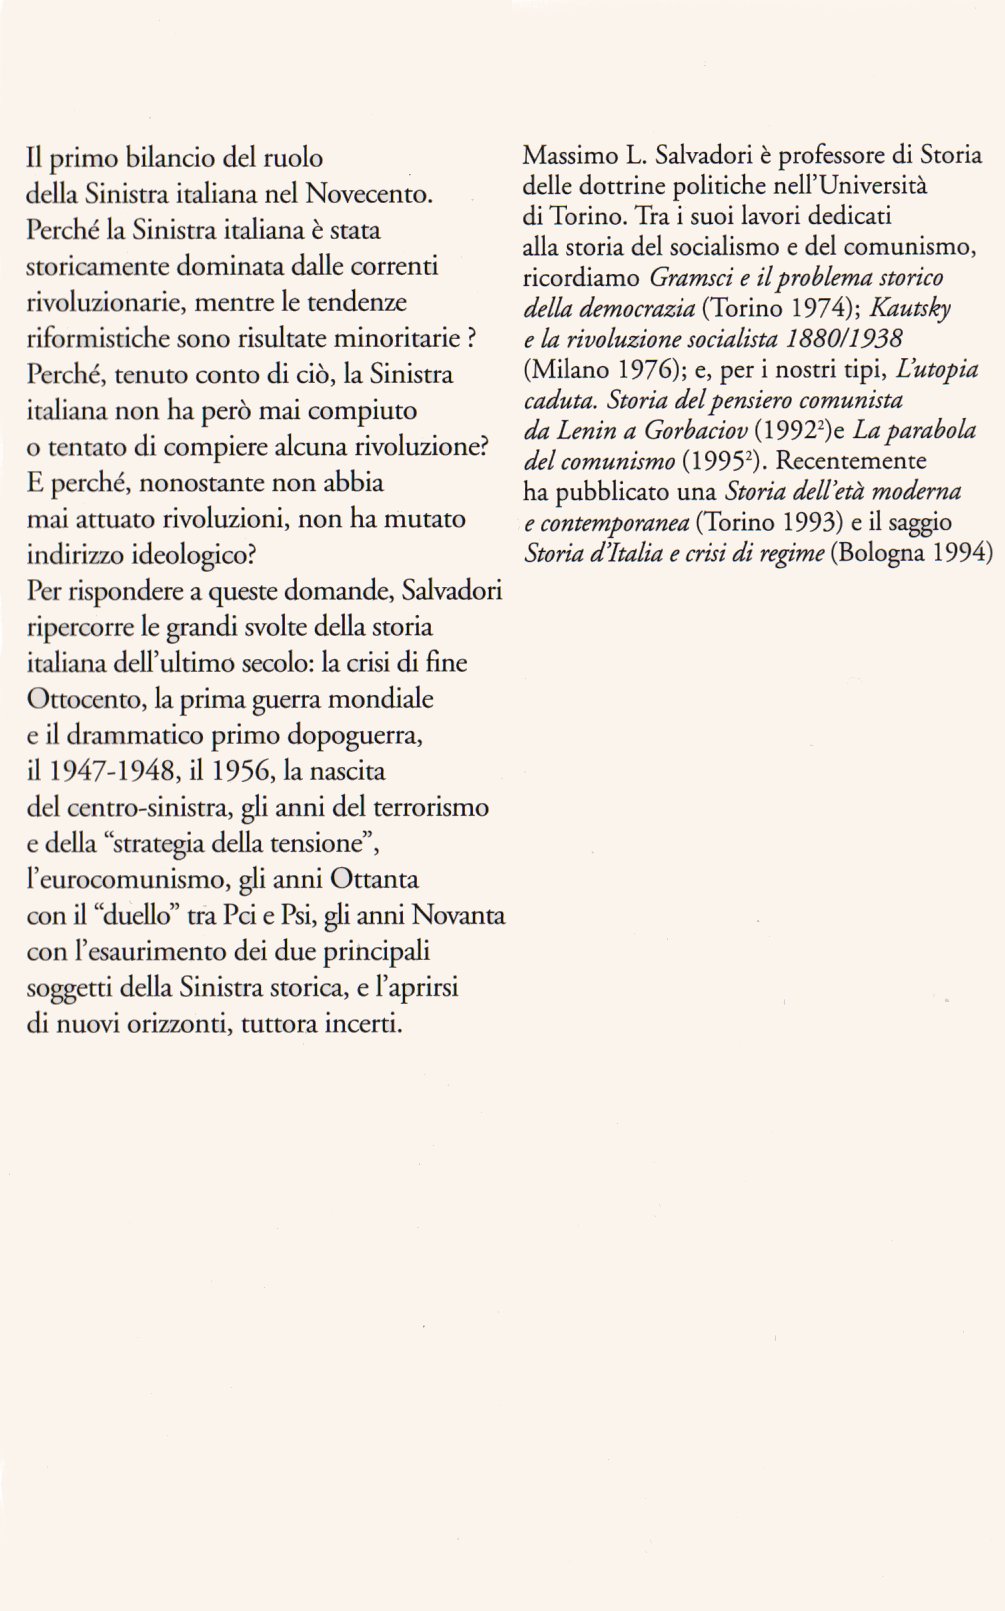 La Sinistra nella storia italiana.